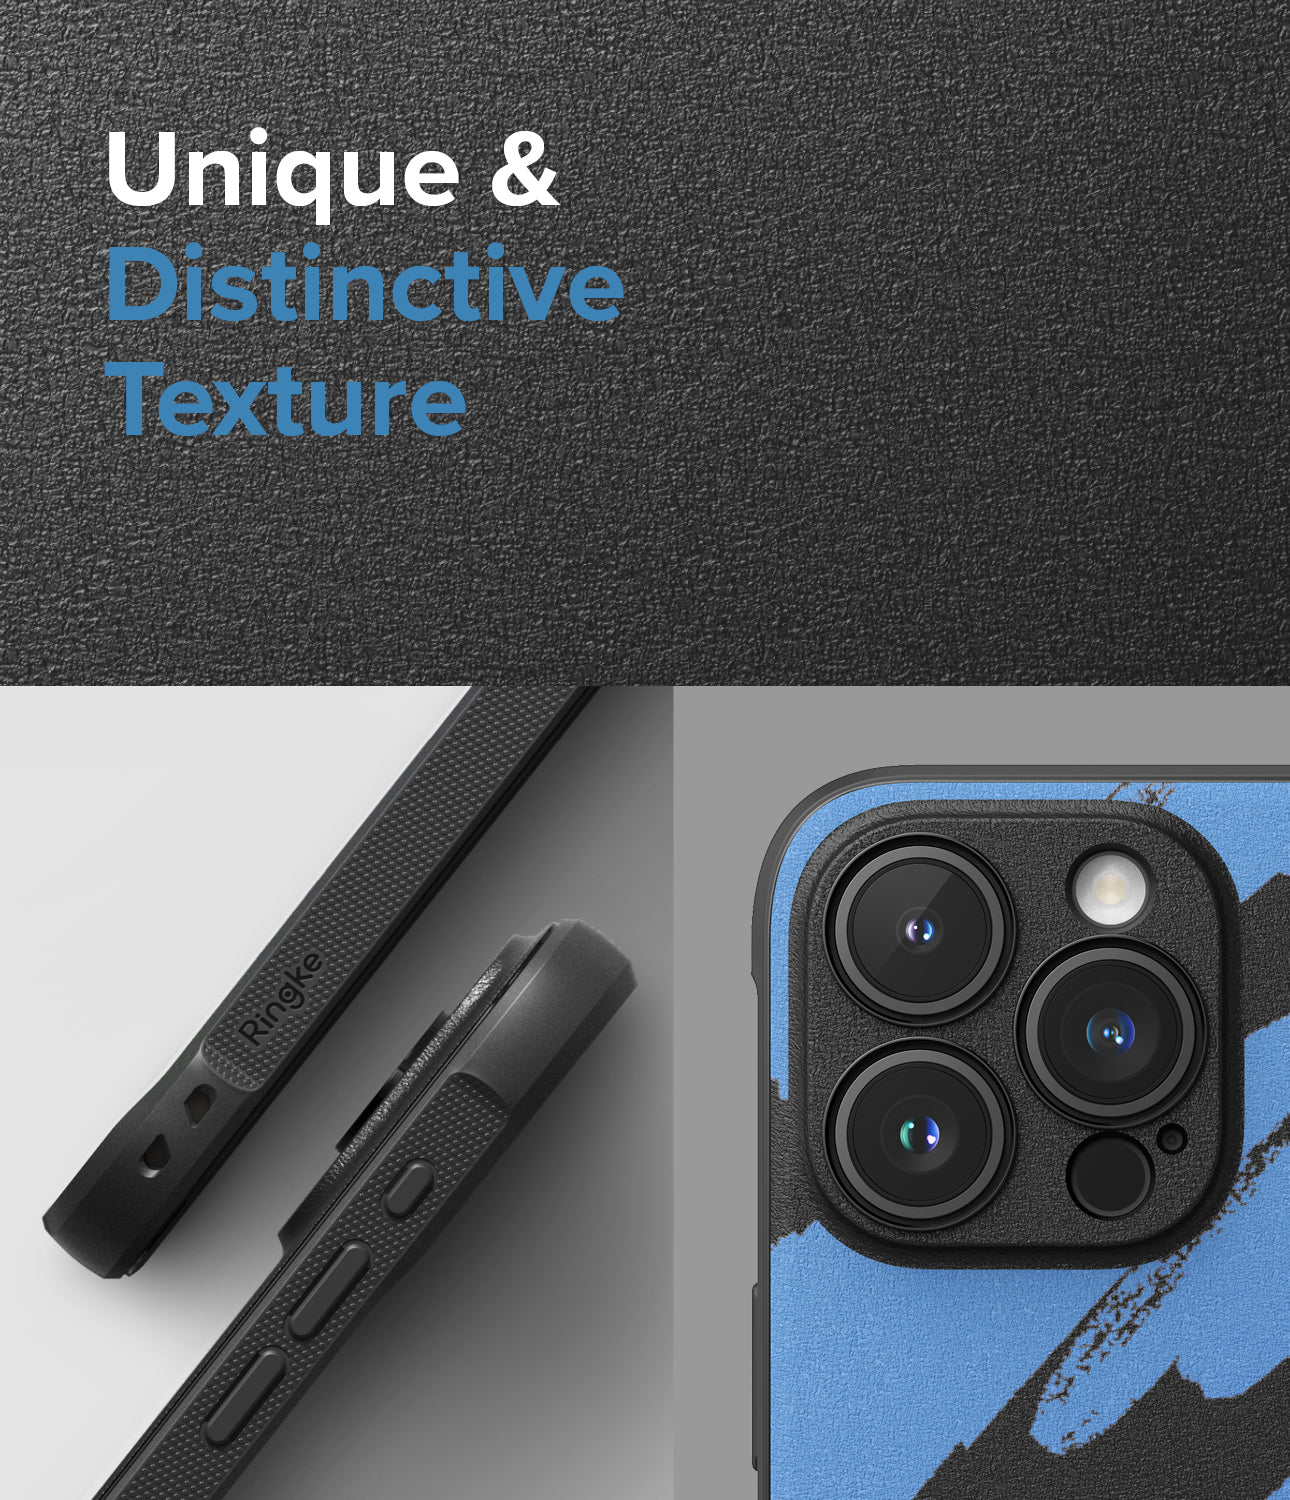 iPhone 15 Pro Max Case | Onyx Design